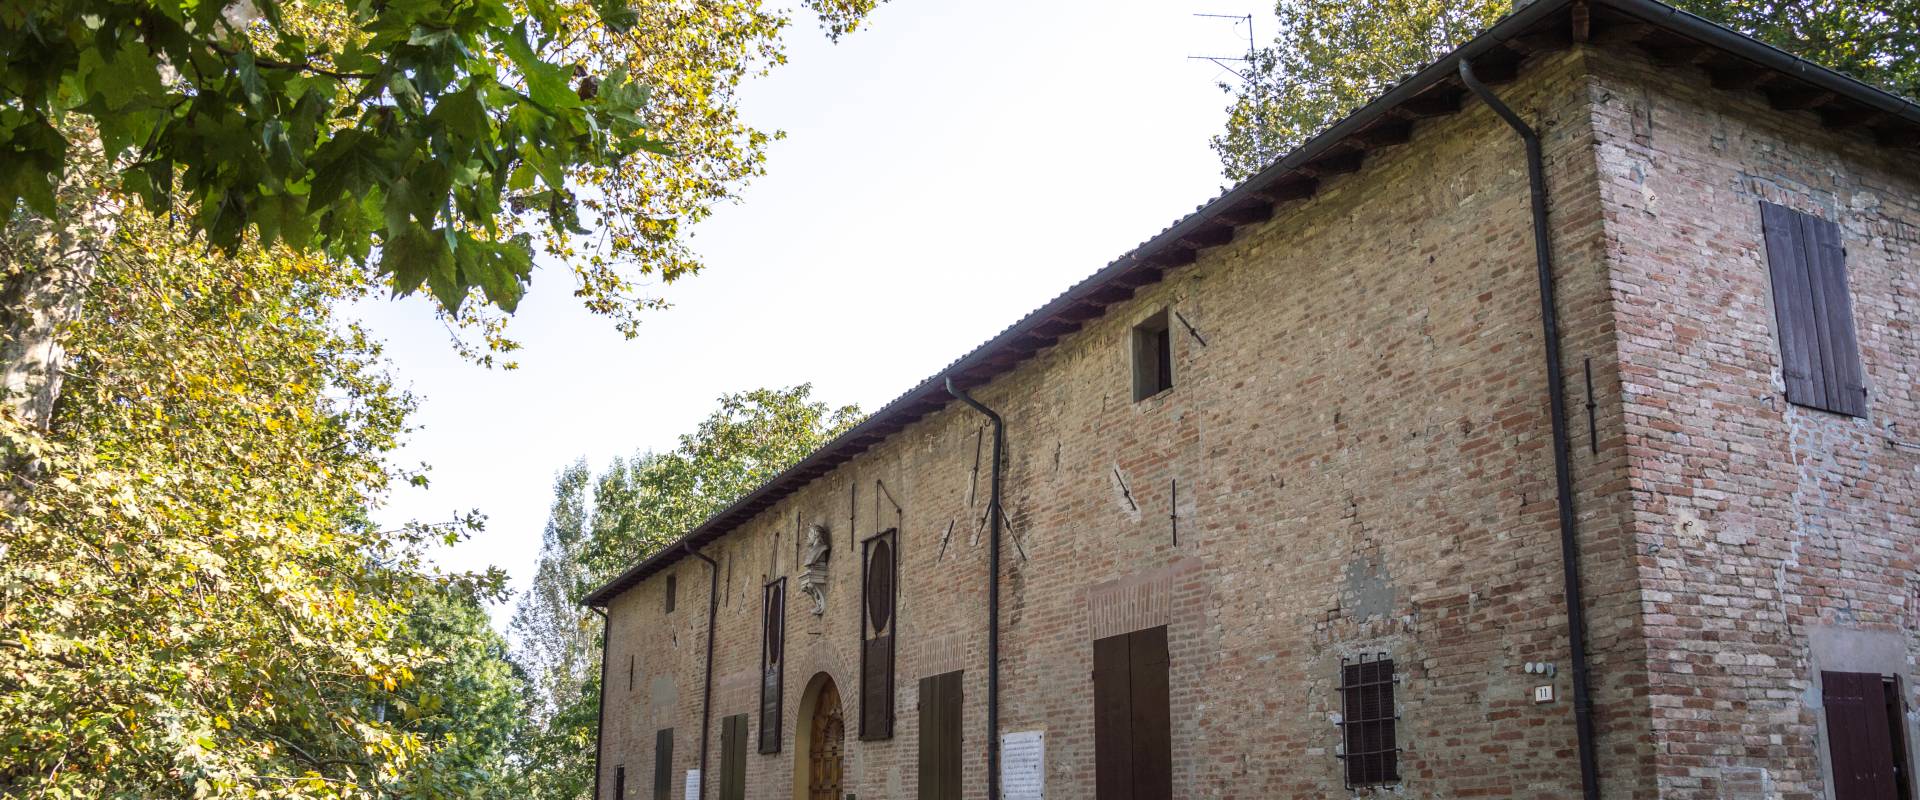 Villa Il Mauriziano - Residenza di Ludovico Ariosto (1) foto di Alessandro Azzolini